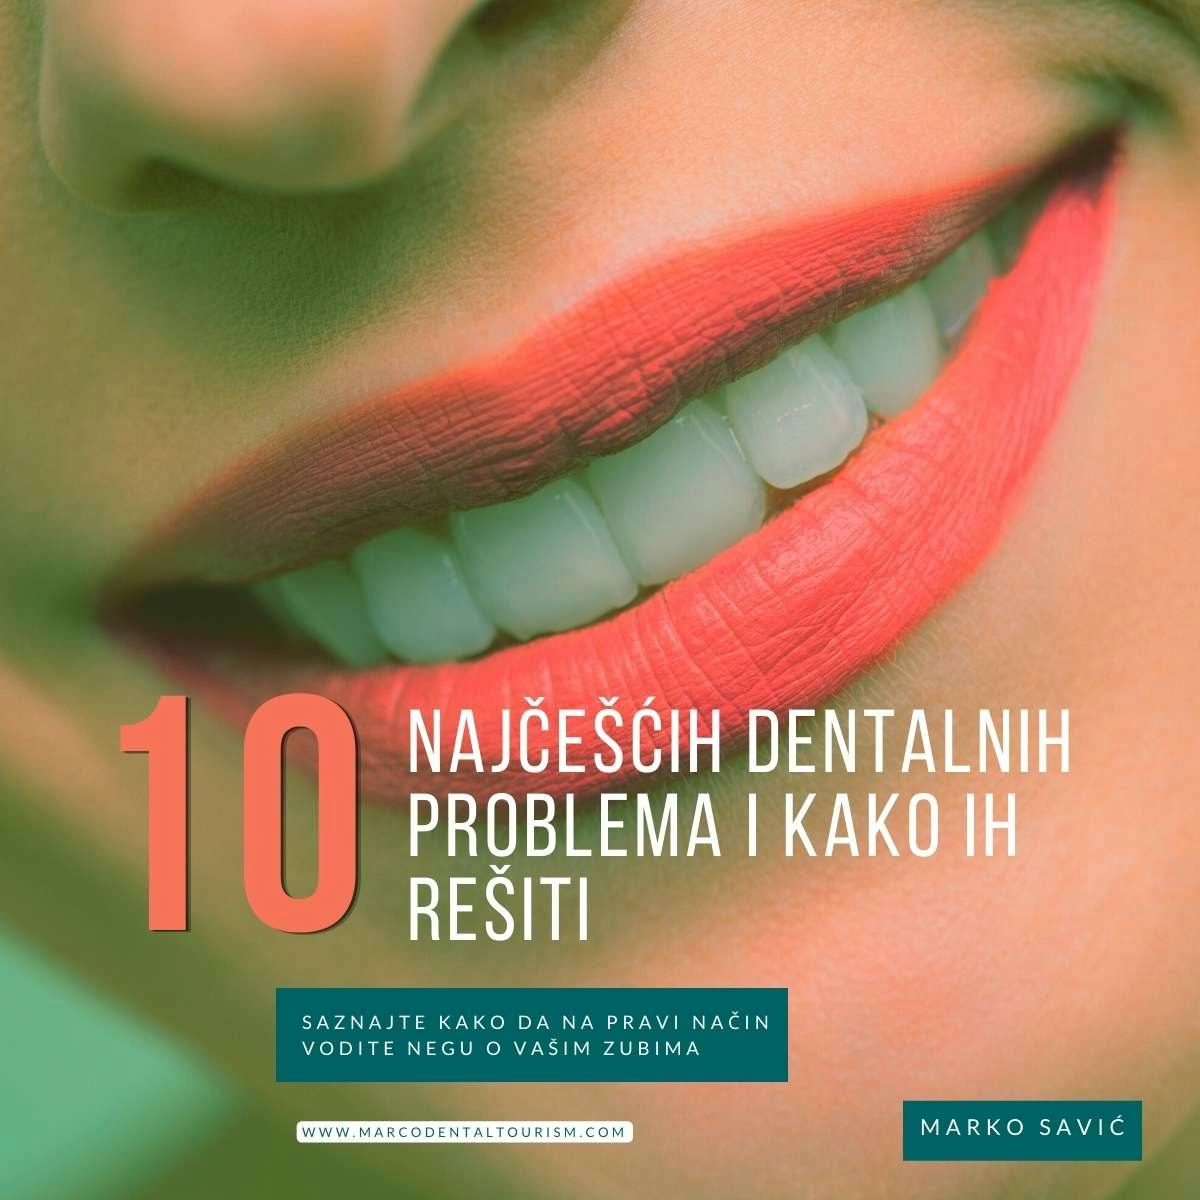 Top 10 Najcescih Dentalnih Problema i Kako ih Resiti